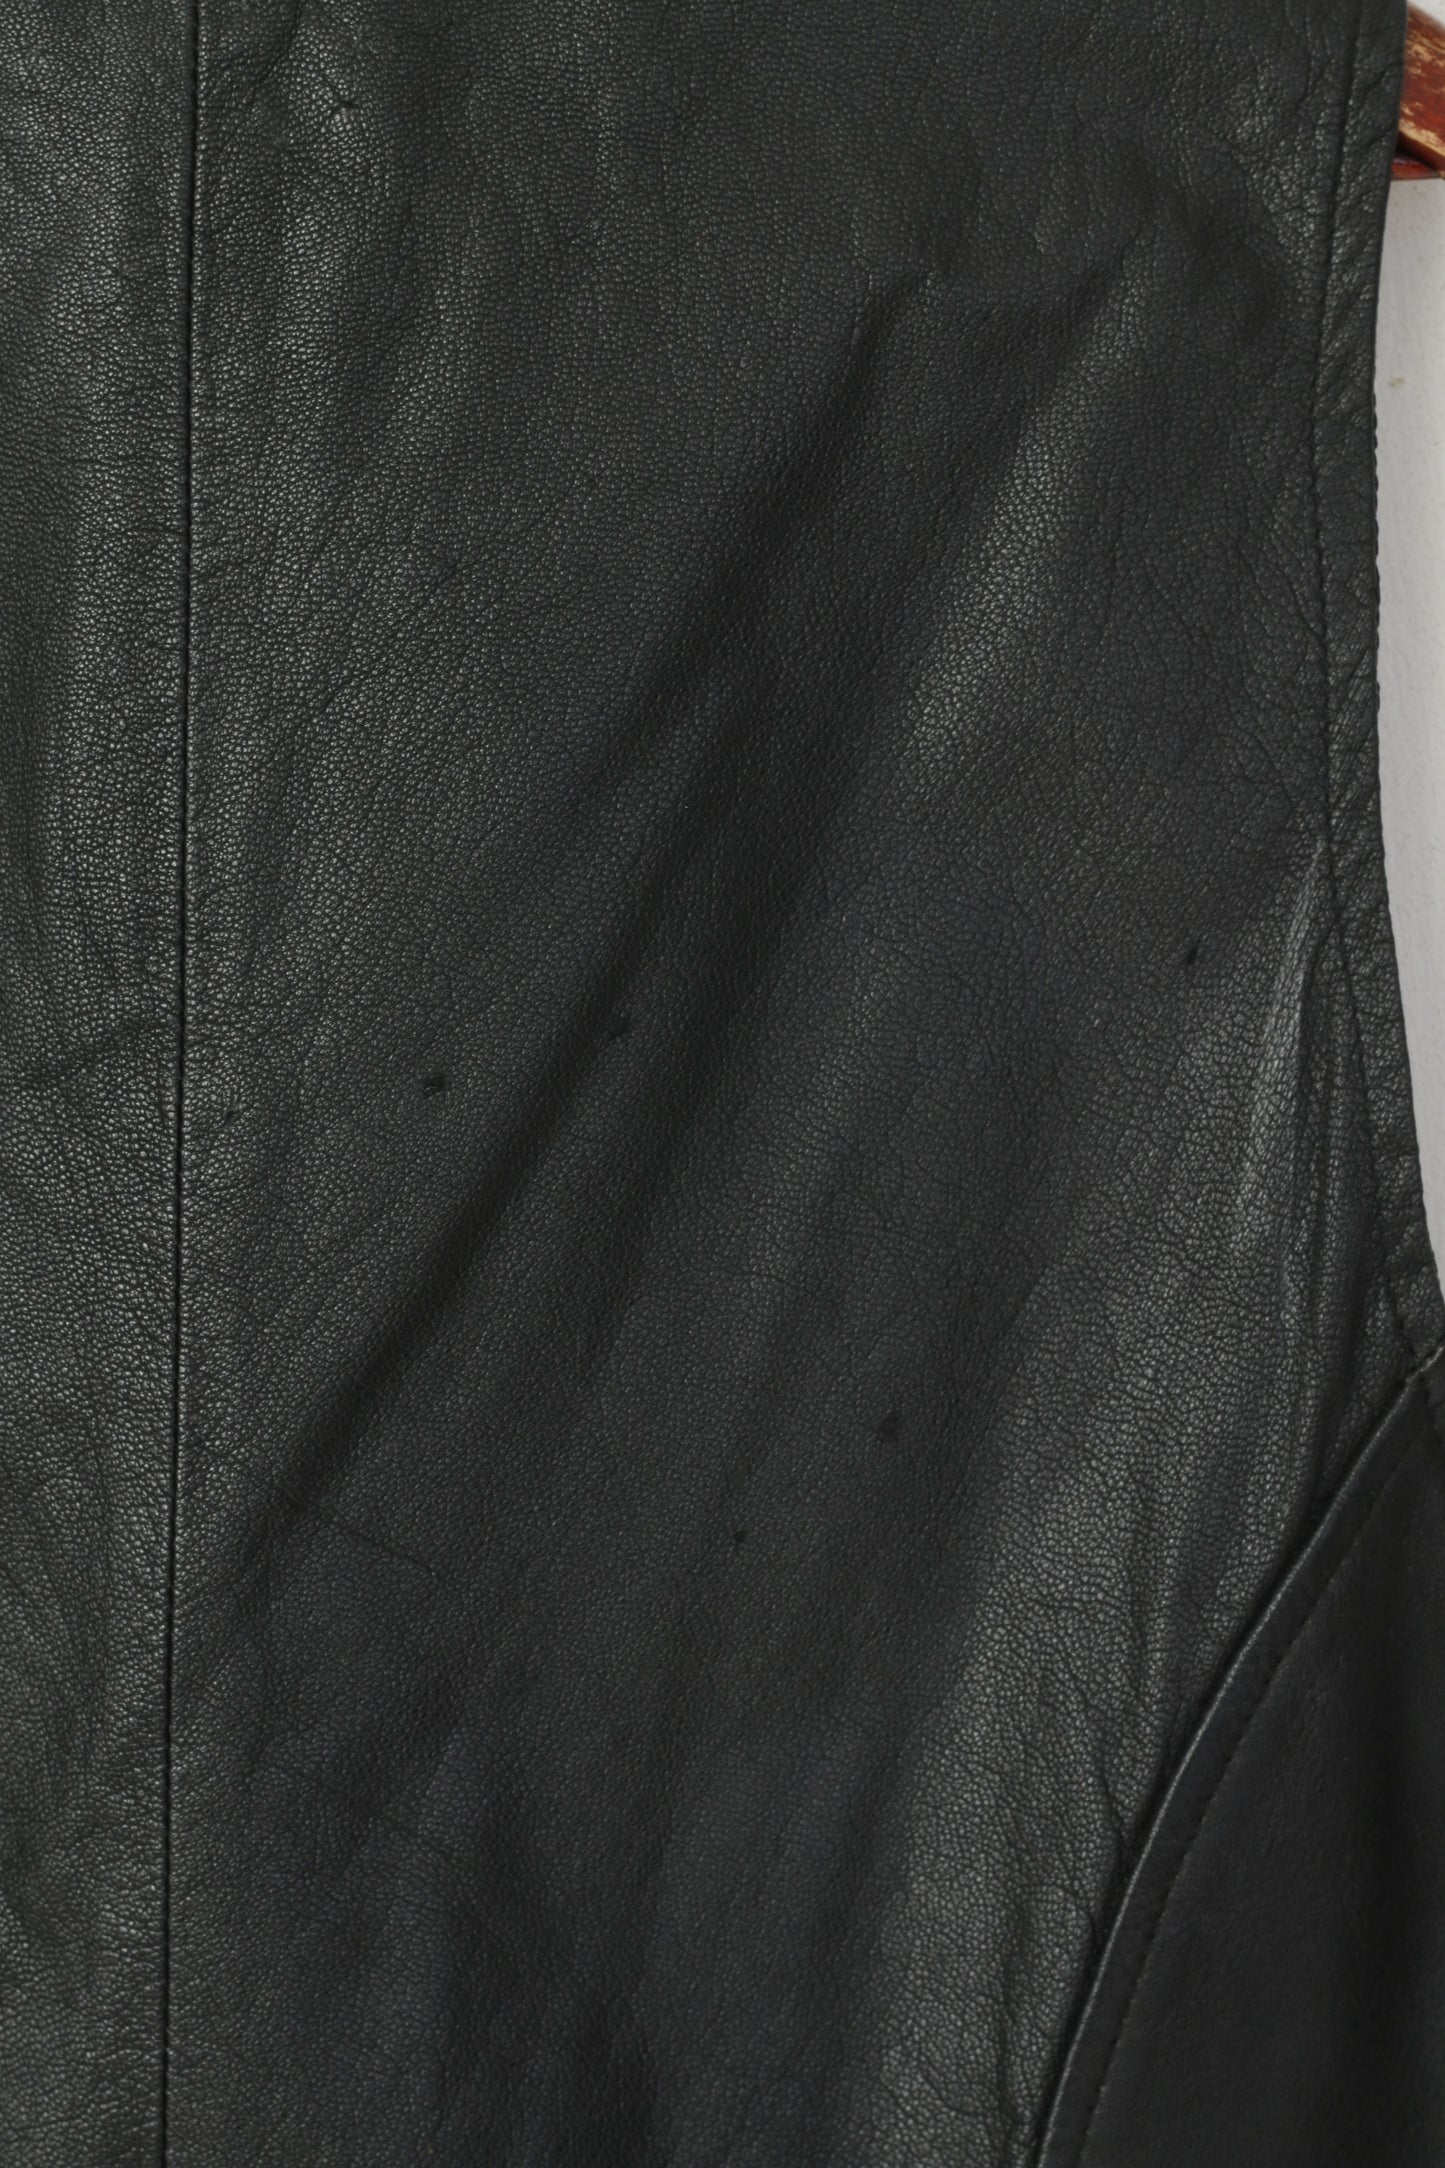 A.B.A Colllection Men 3XL (L) Waistcoat Black Leather Snaps Vintage Retro Vest